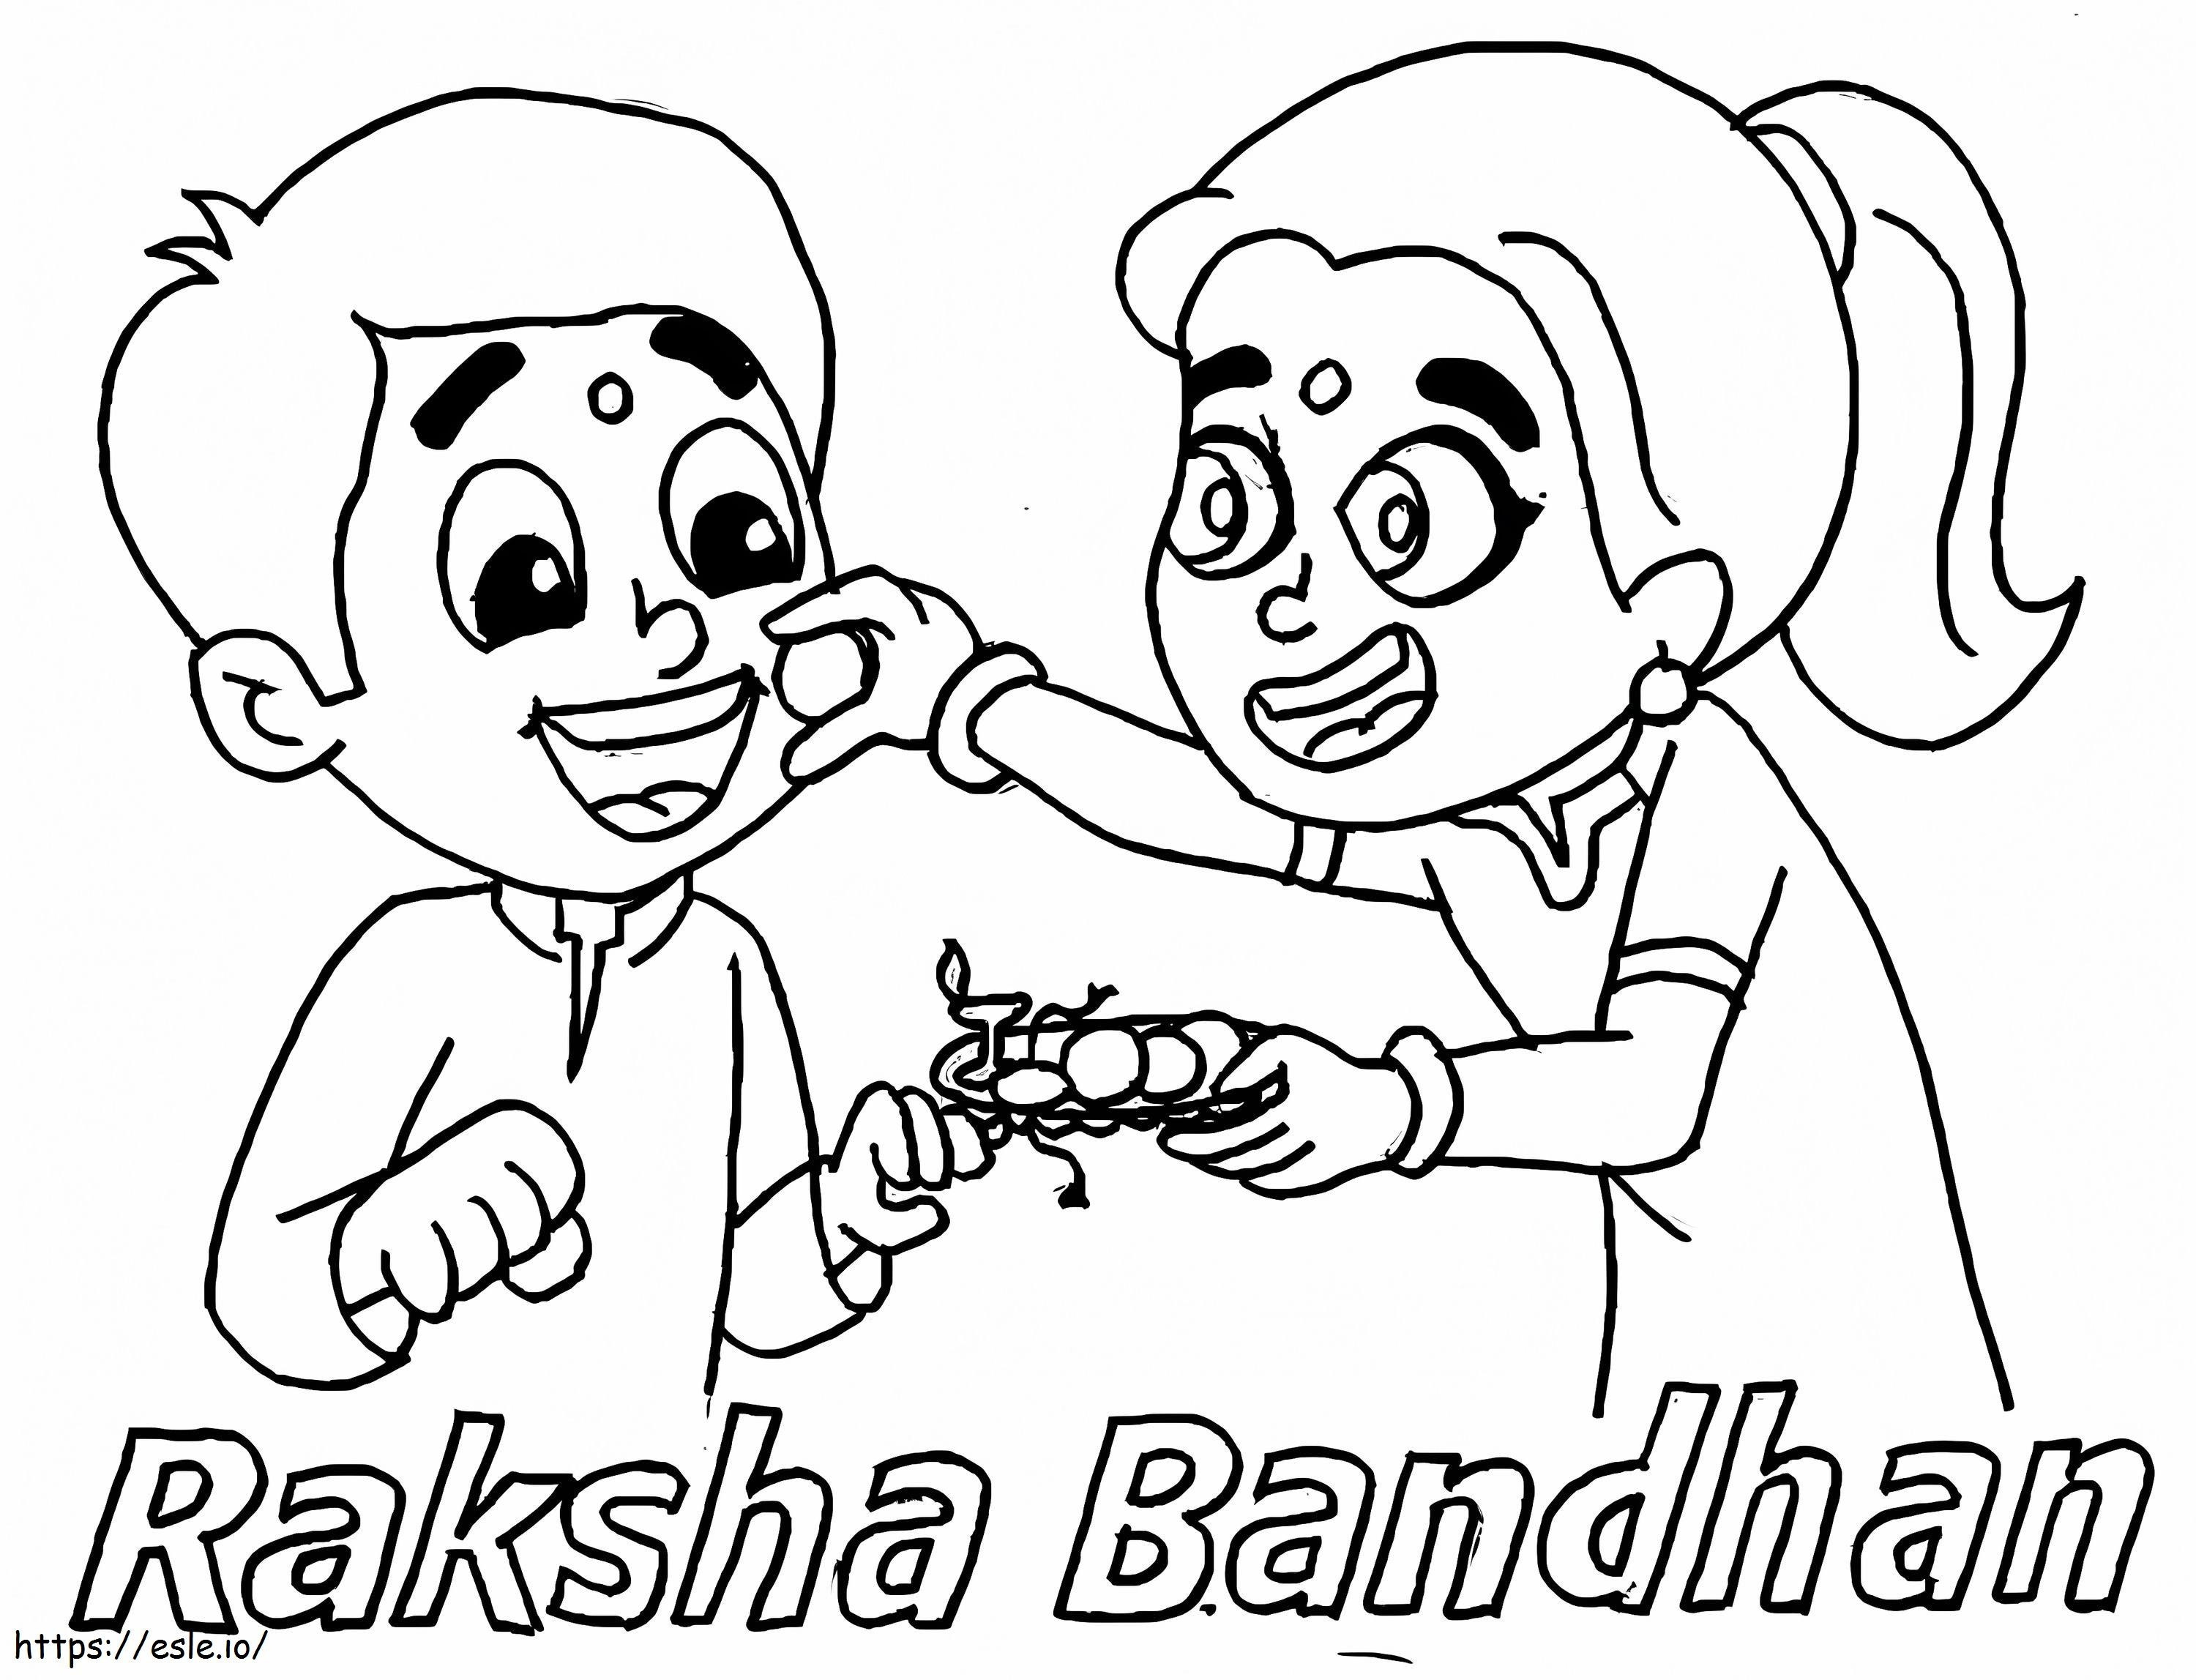 Raksha Bandhan 5 ausmalbilder